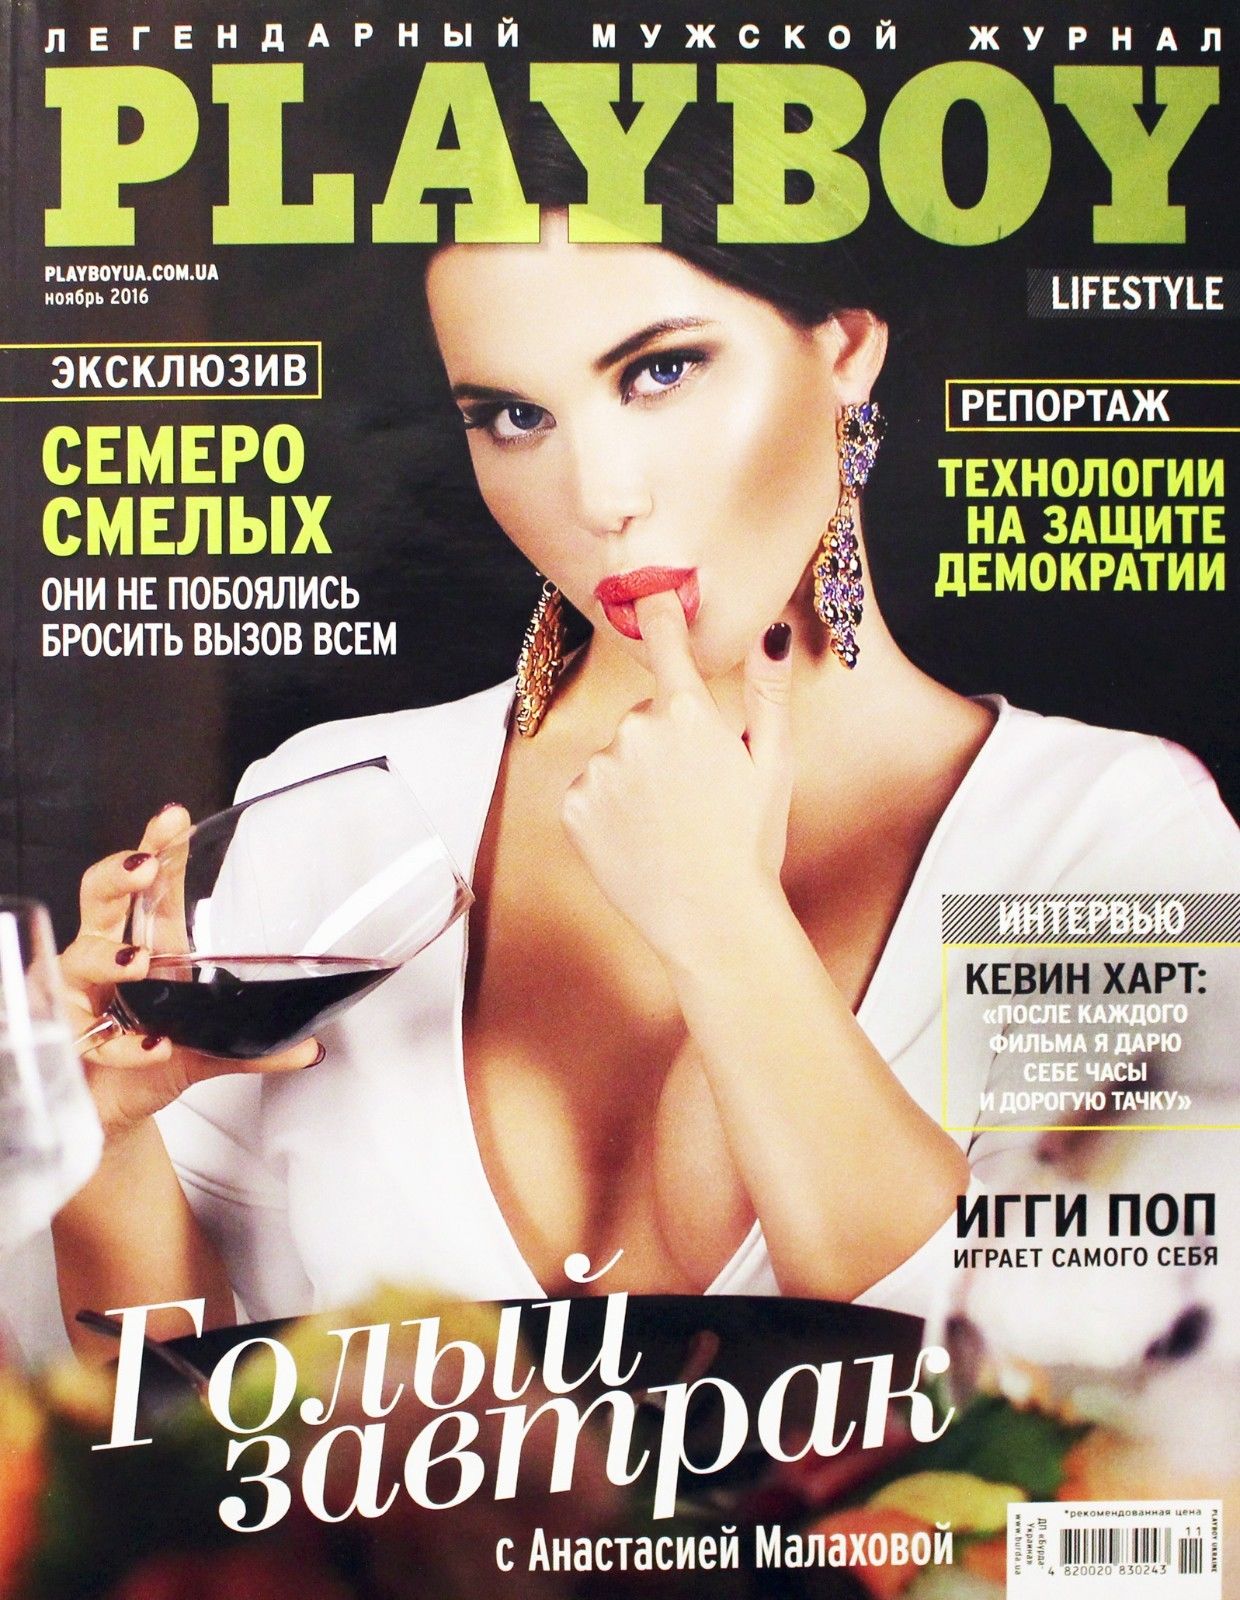 Playboy (Ukraine) November 2016 magazine back issue Playboy (Ukraine) magizine back copy Playboy (Ukraine) November 2016 Magazine Back Issue Published by HMH Publishing, Hugh Marston Hefner. Covergirl Anastasia Malakhova.